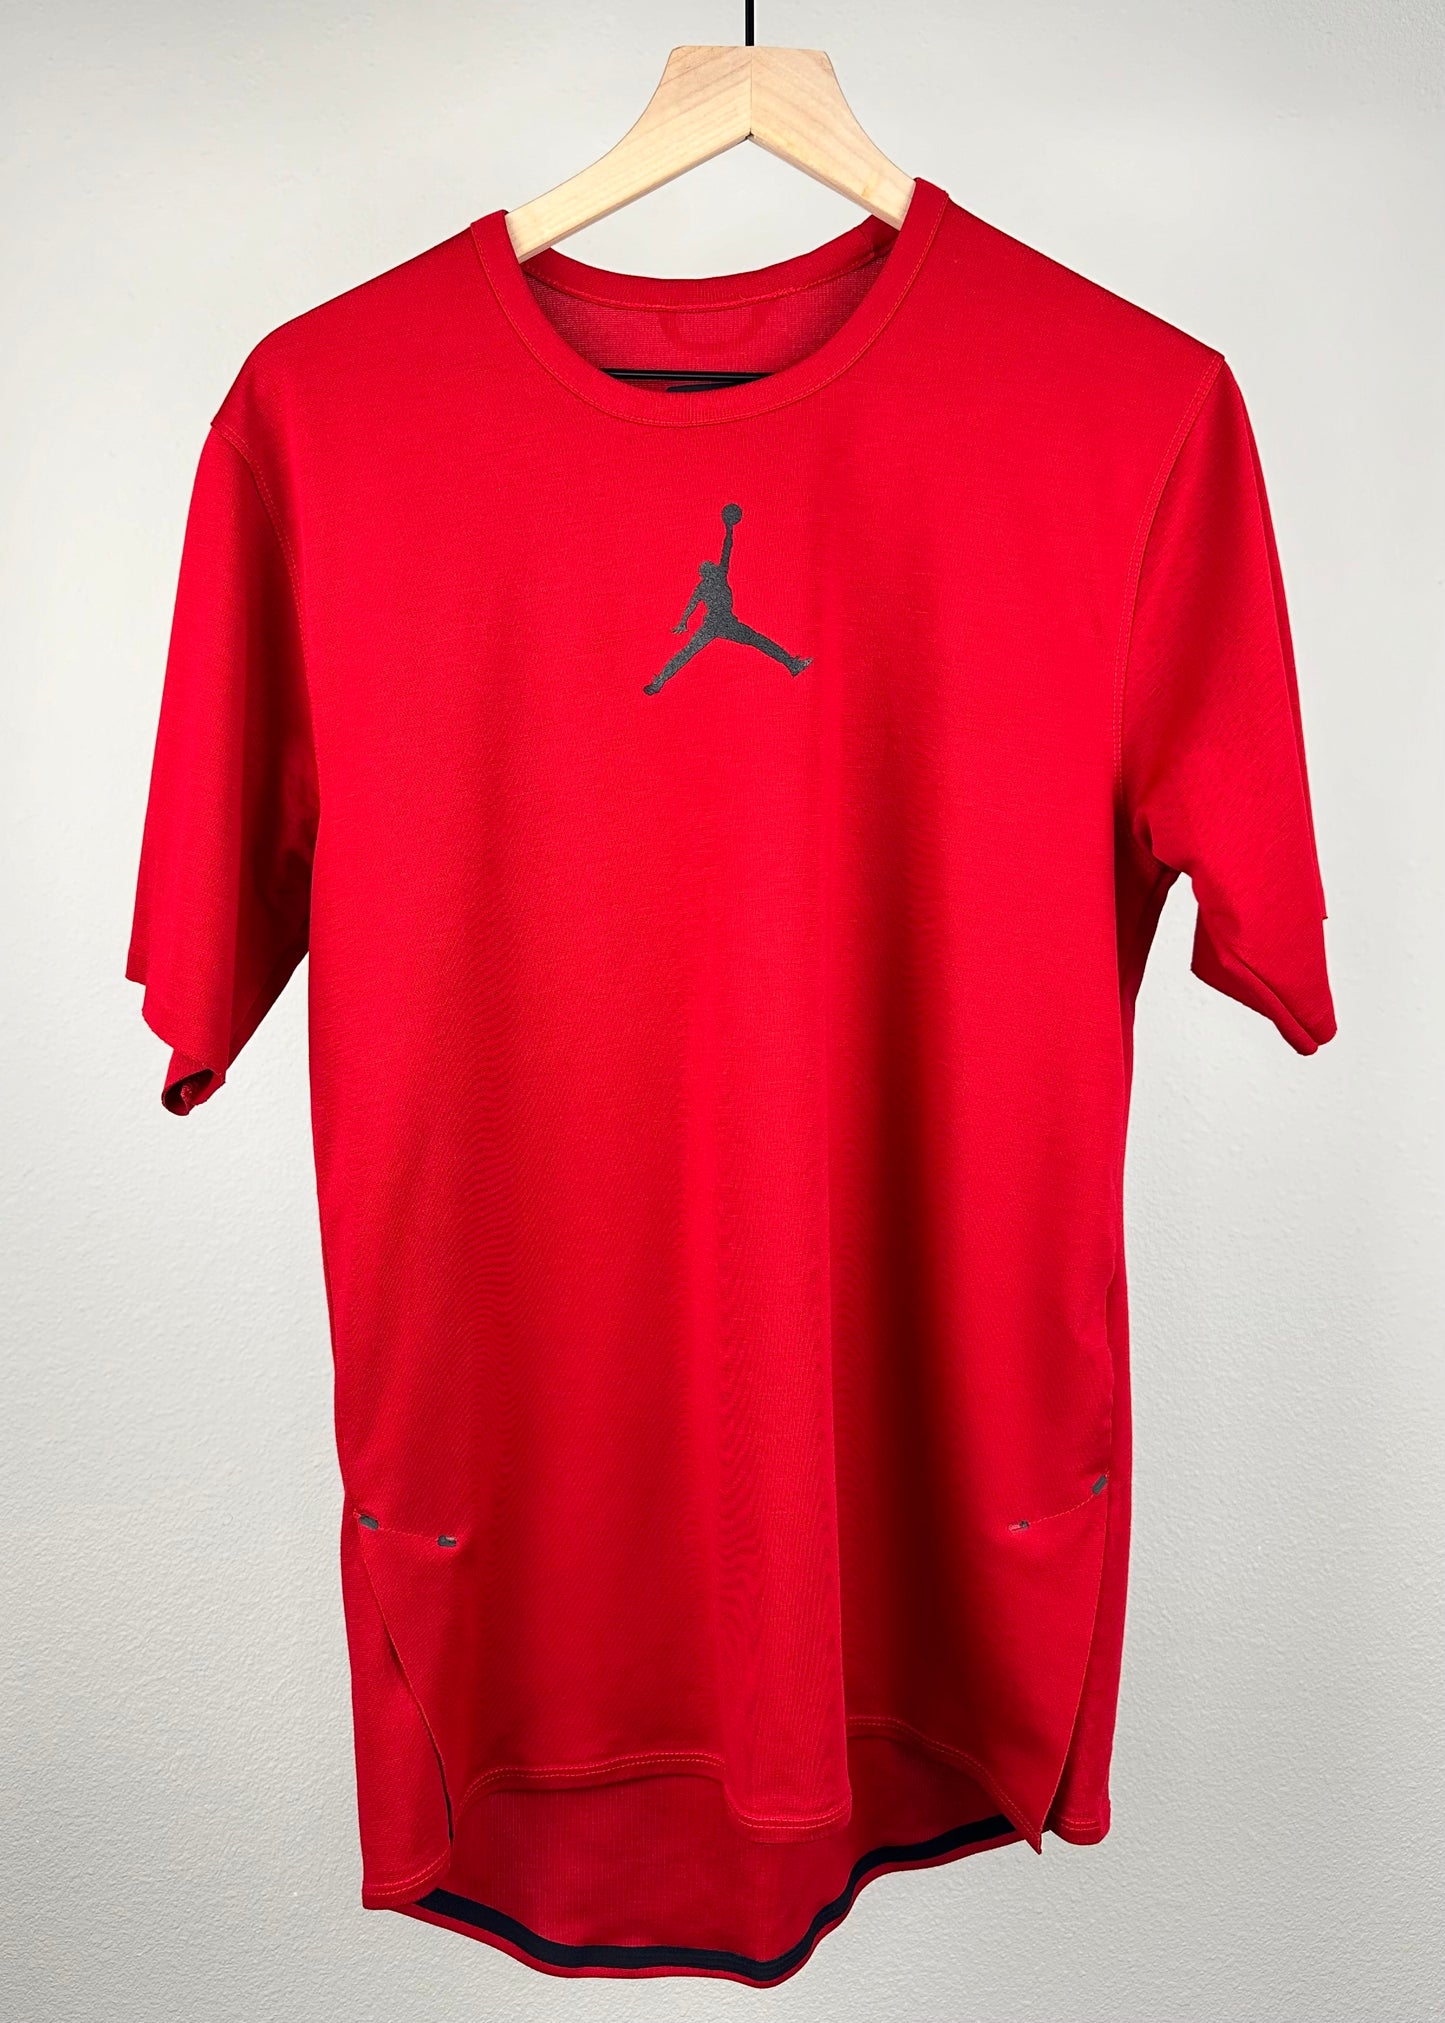 Red Gym Shirt By Jordan